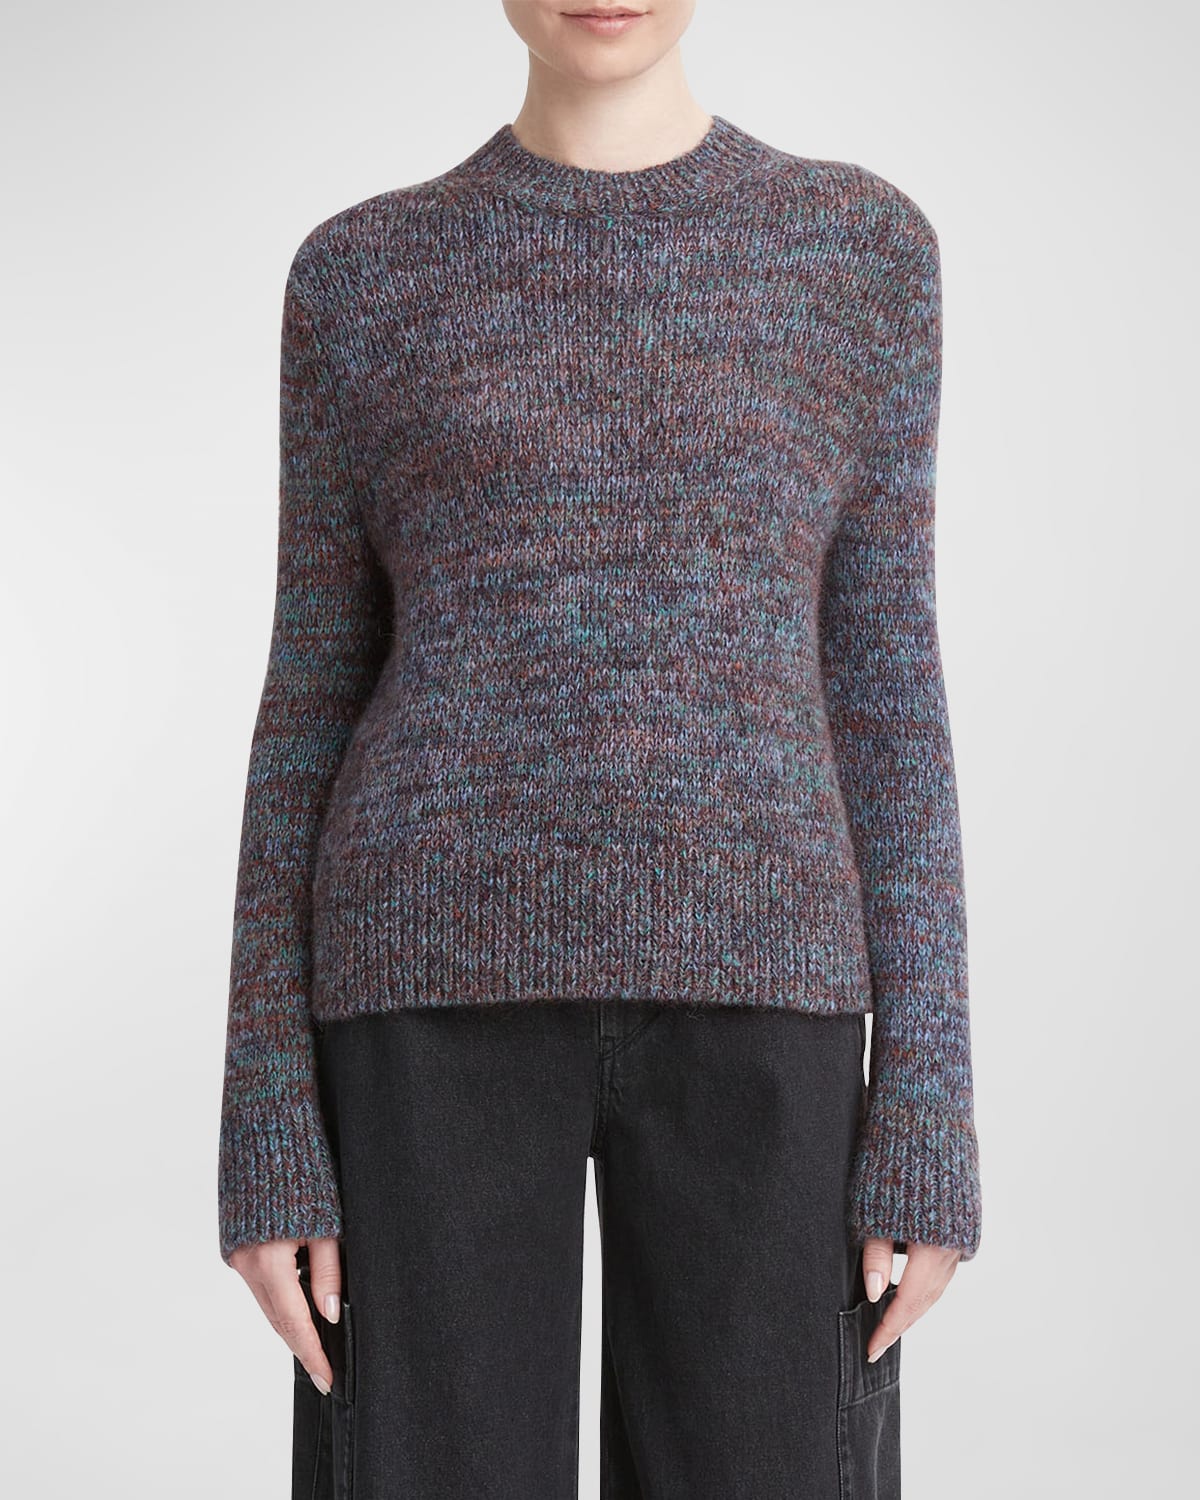 Vuittamins Two-Tone Sweater - Luxury Knitwear - Ready to Wear